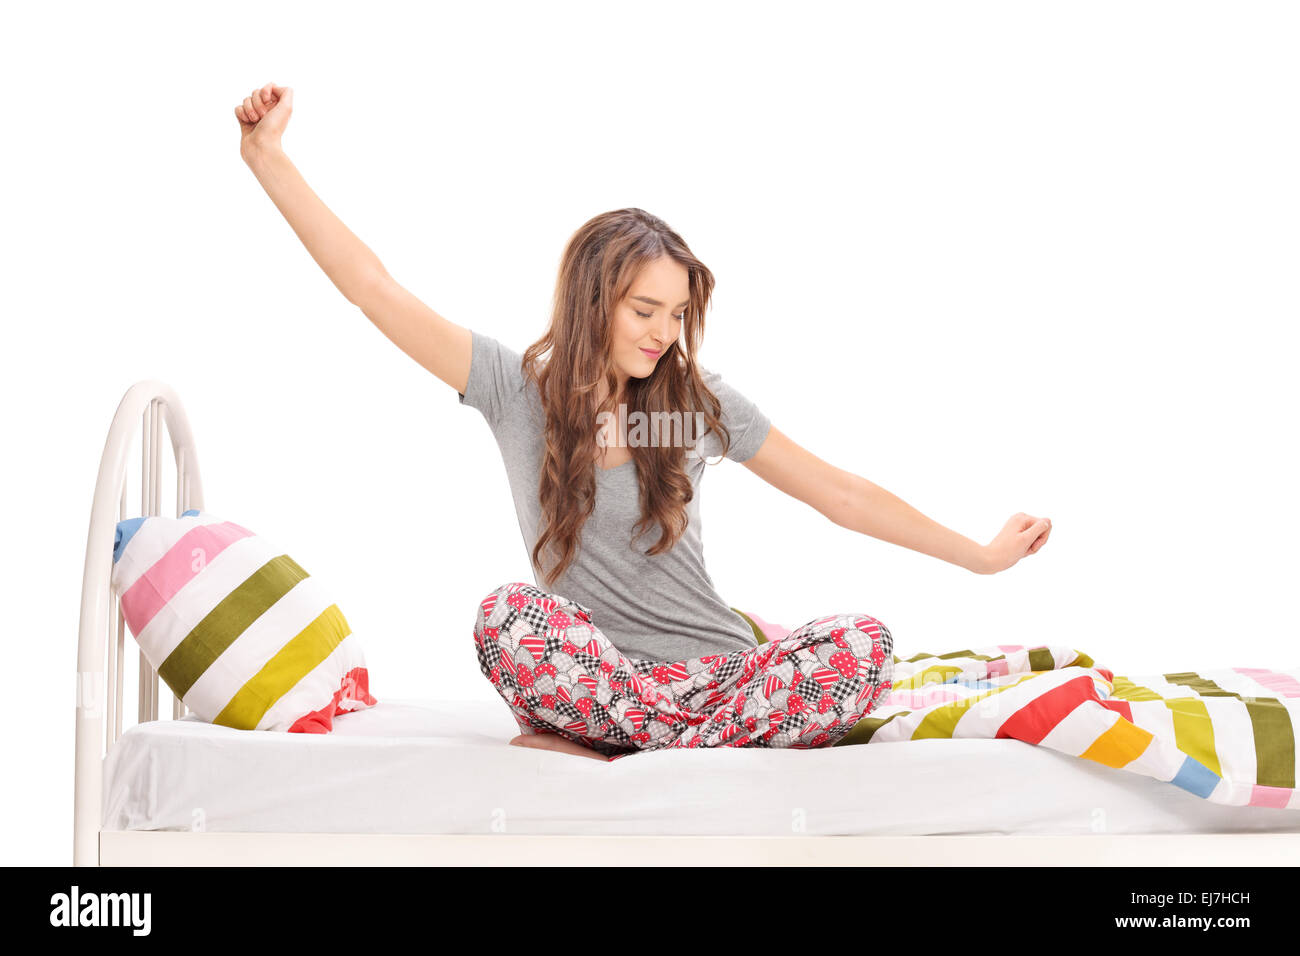 Schöne Frau am Morgen aufwachen und stretching sitzen auf einem Bett isoliert auf weißem Hintergrund Stockfoto